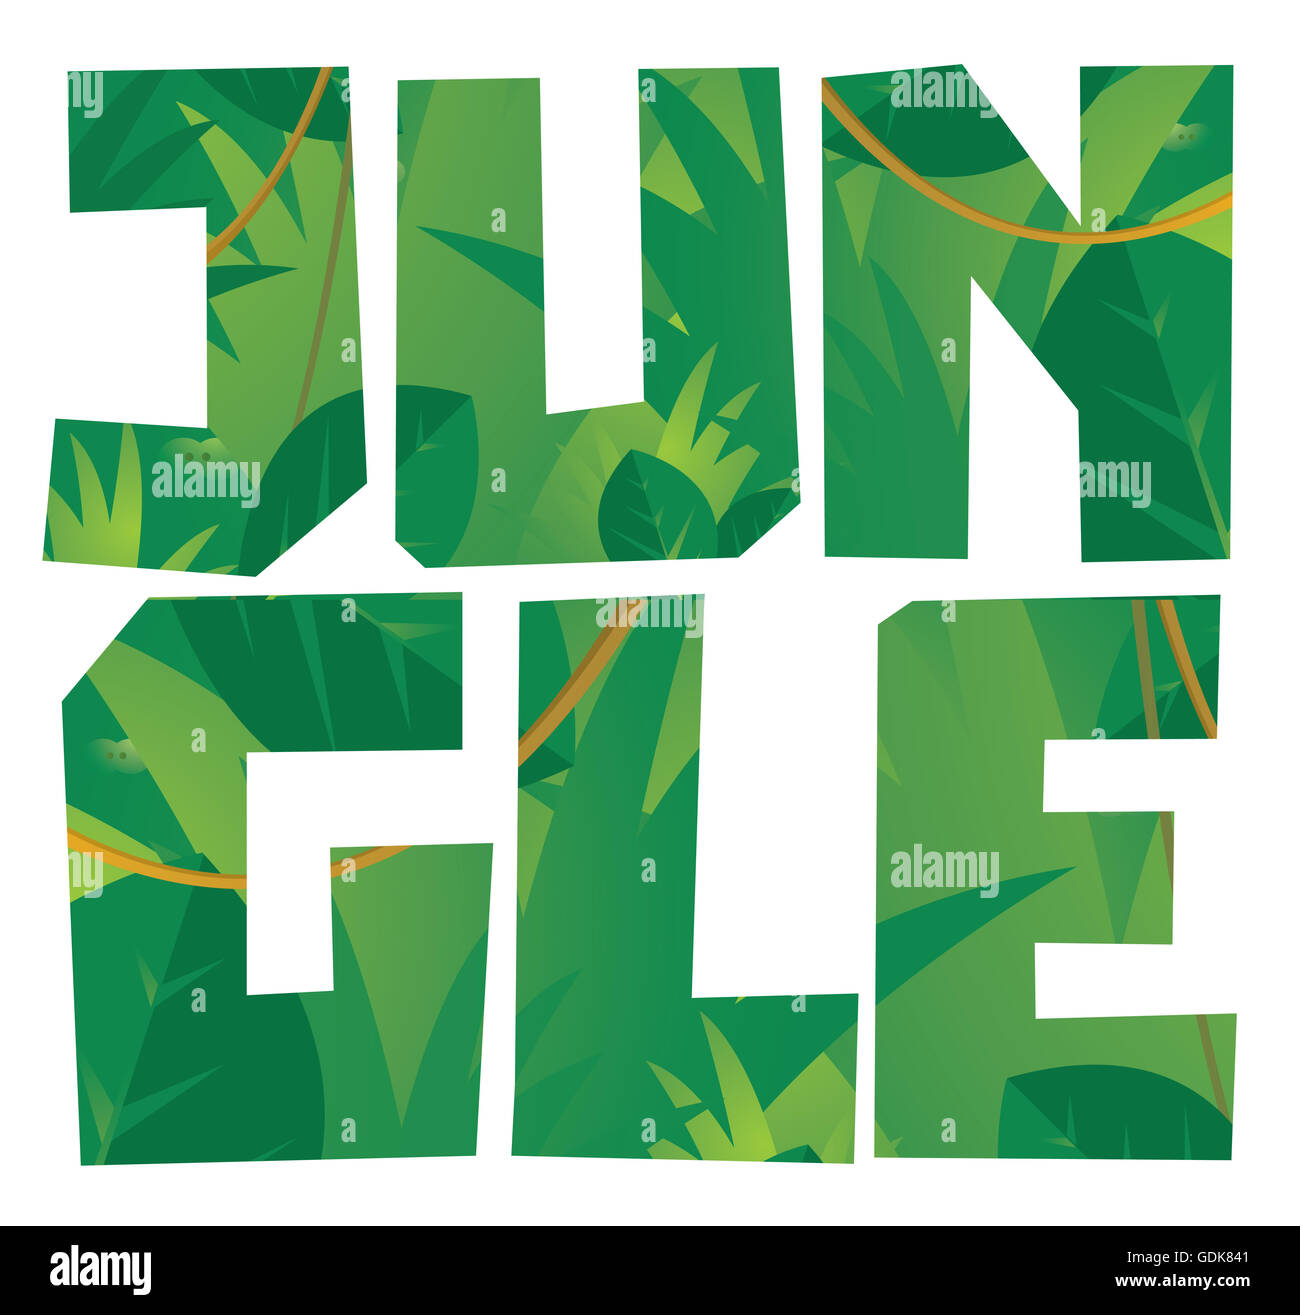 Cartoon-Illustration der Dschungel Wort mit Hintergrund vegetation Stockfoto